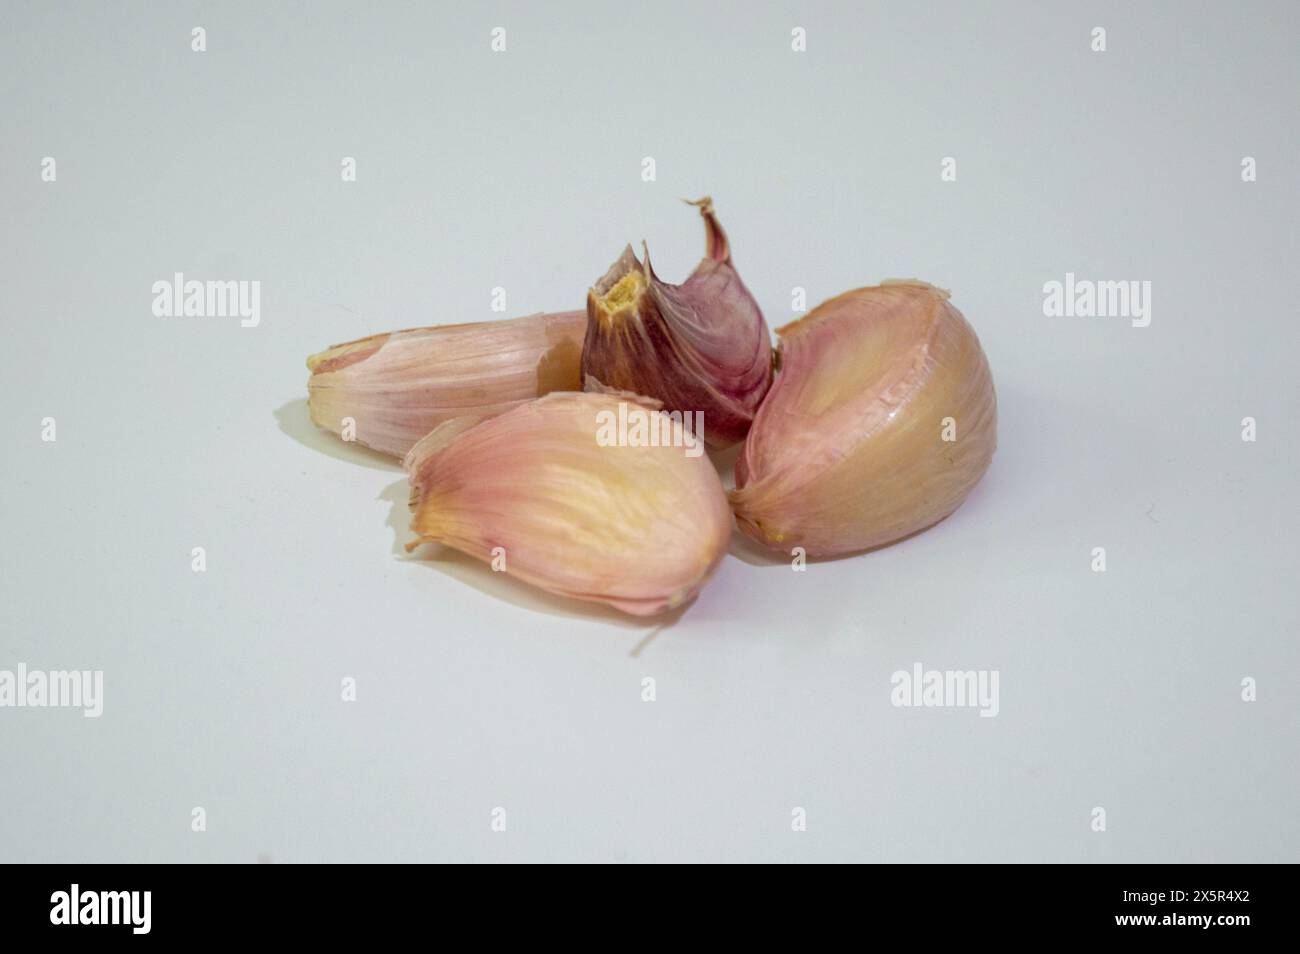 White garlic cloves, Mediterranean clove Stock Photo